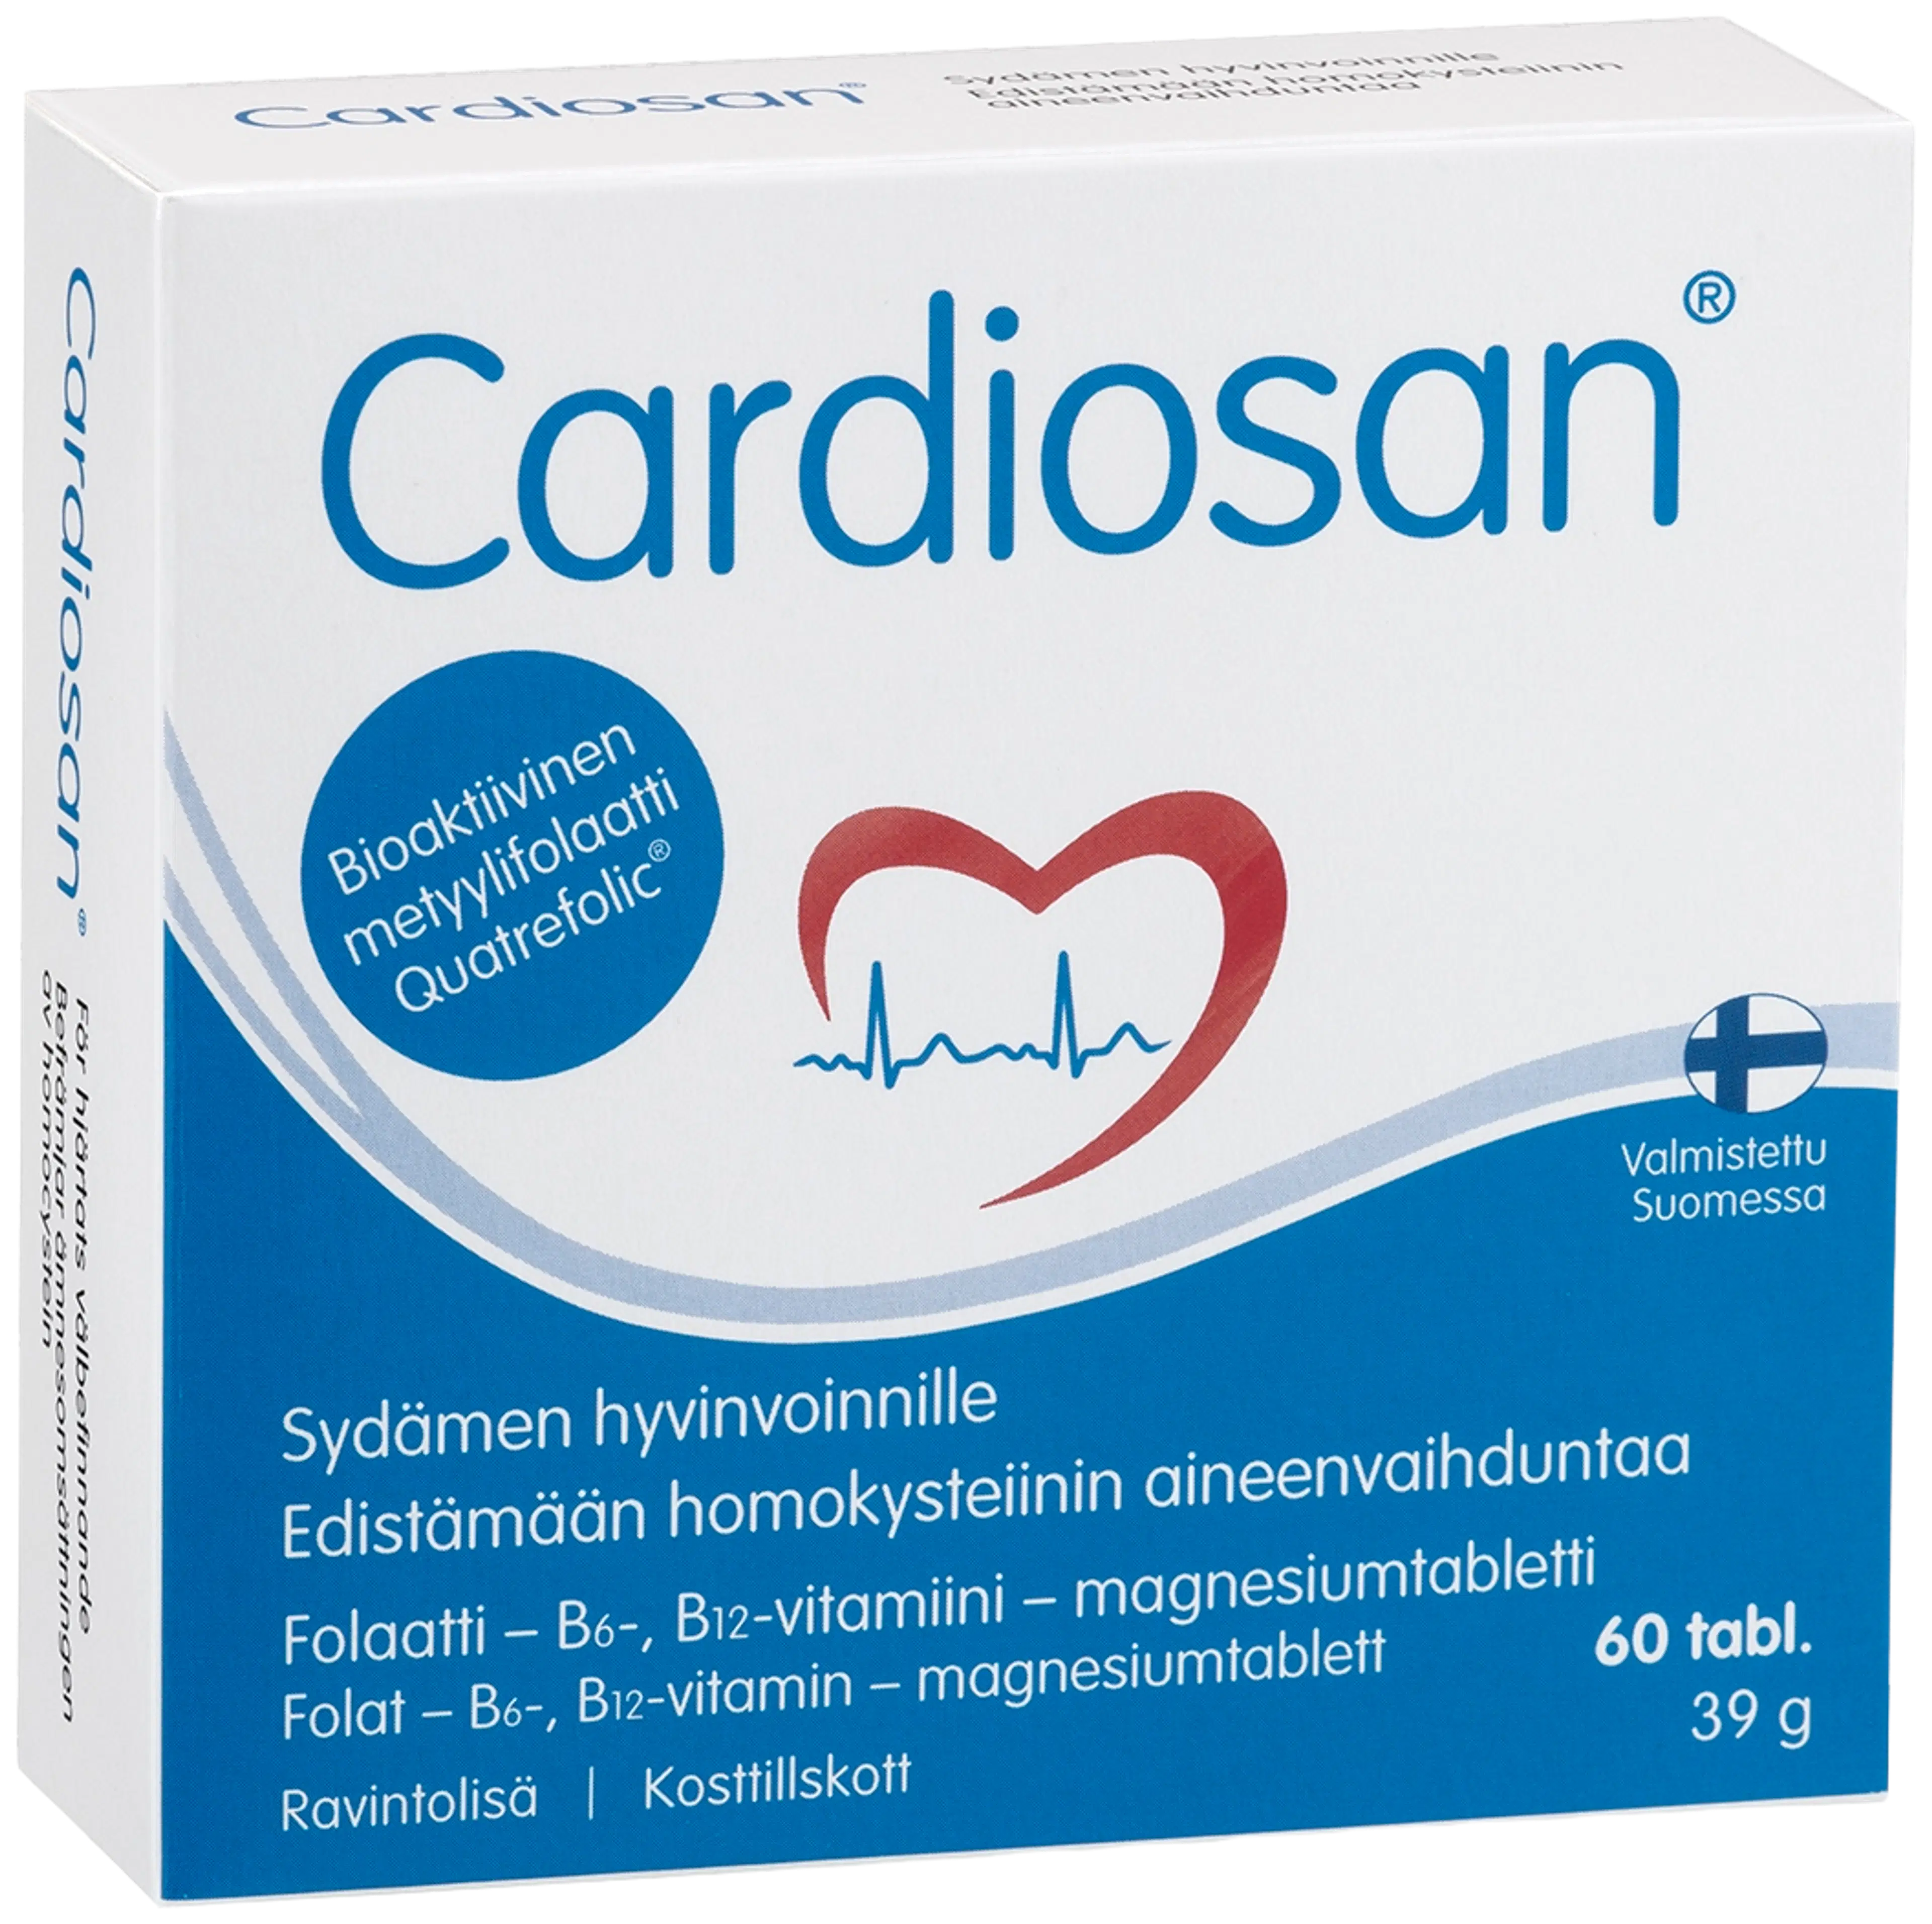 Cardiosan Folaatti-vitamiini-magnesiumtabletti 60 tabl